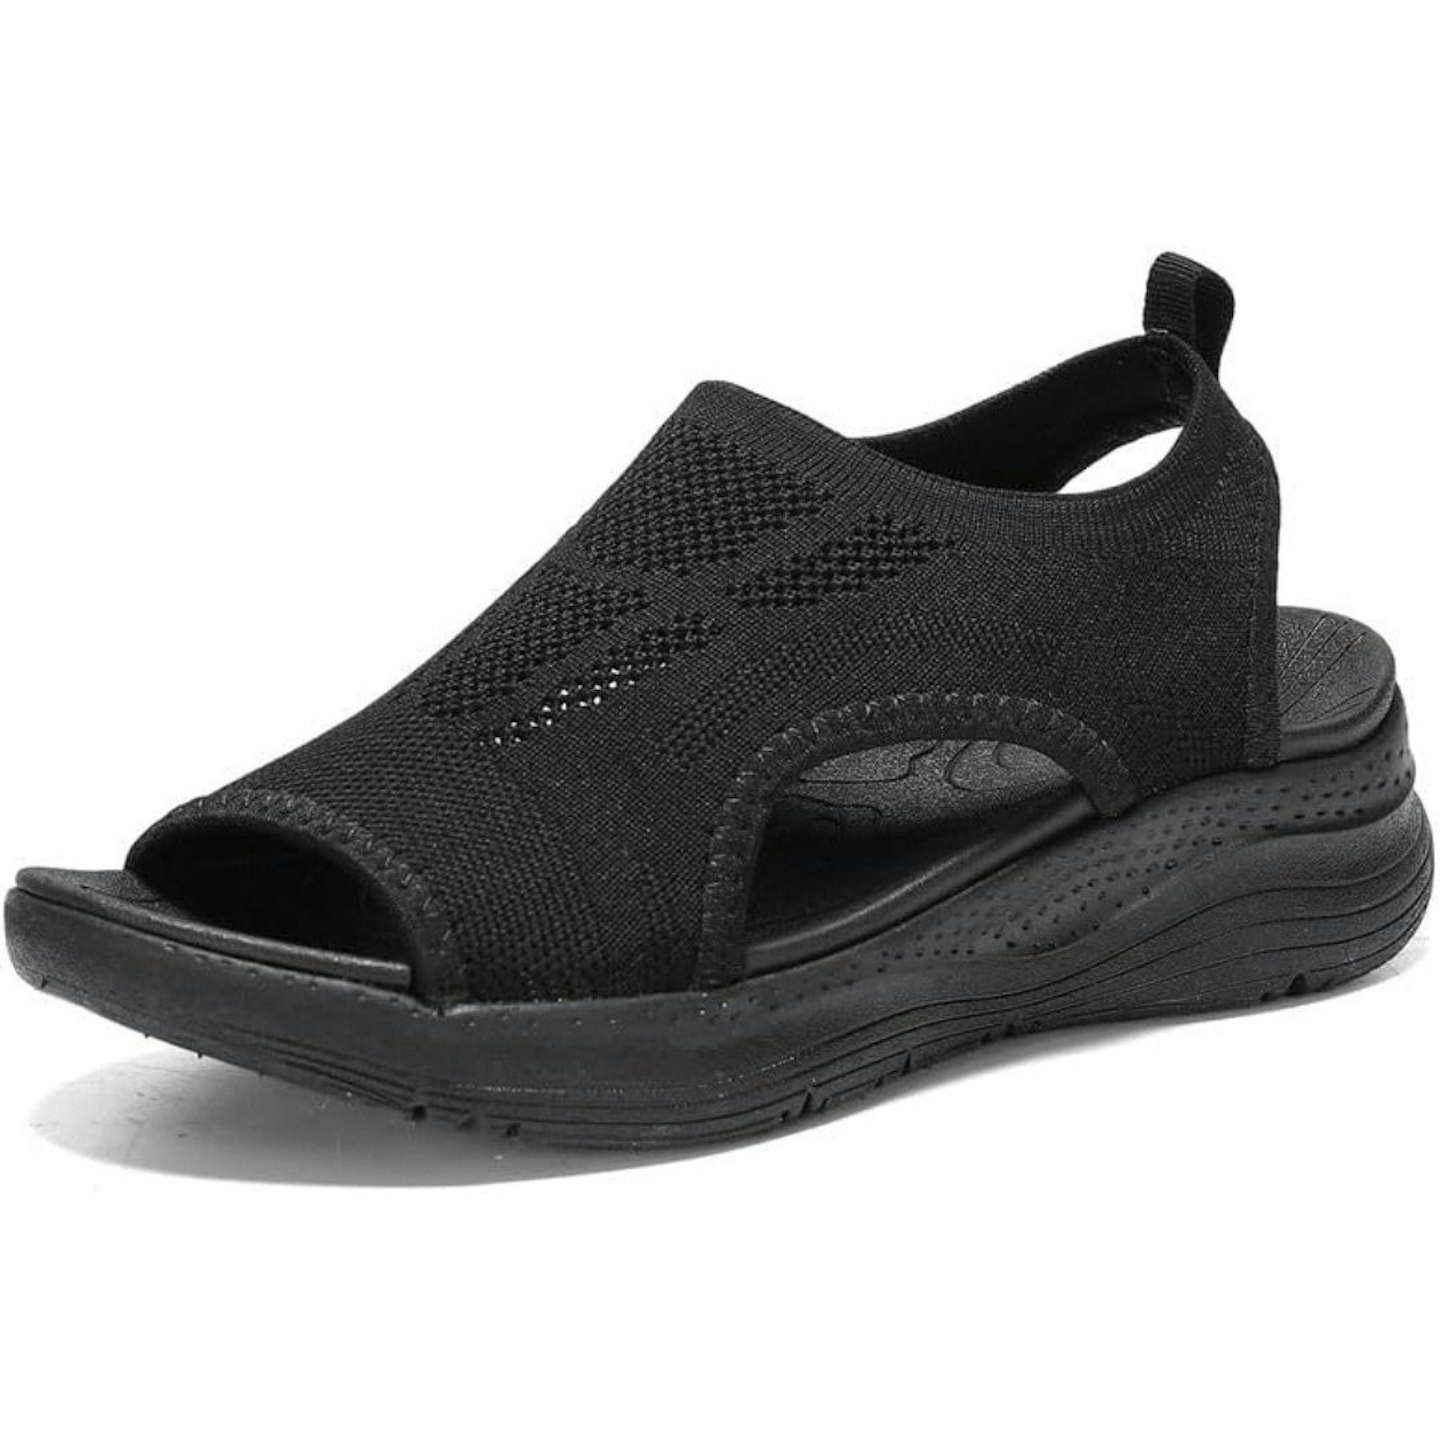 Ziitop - Sandals